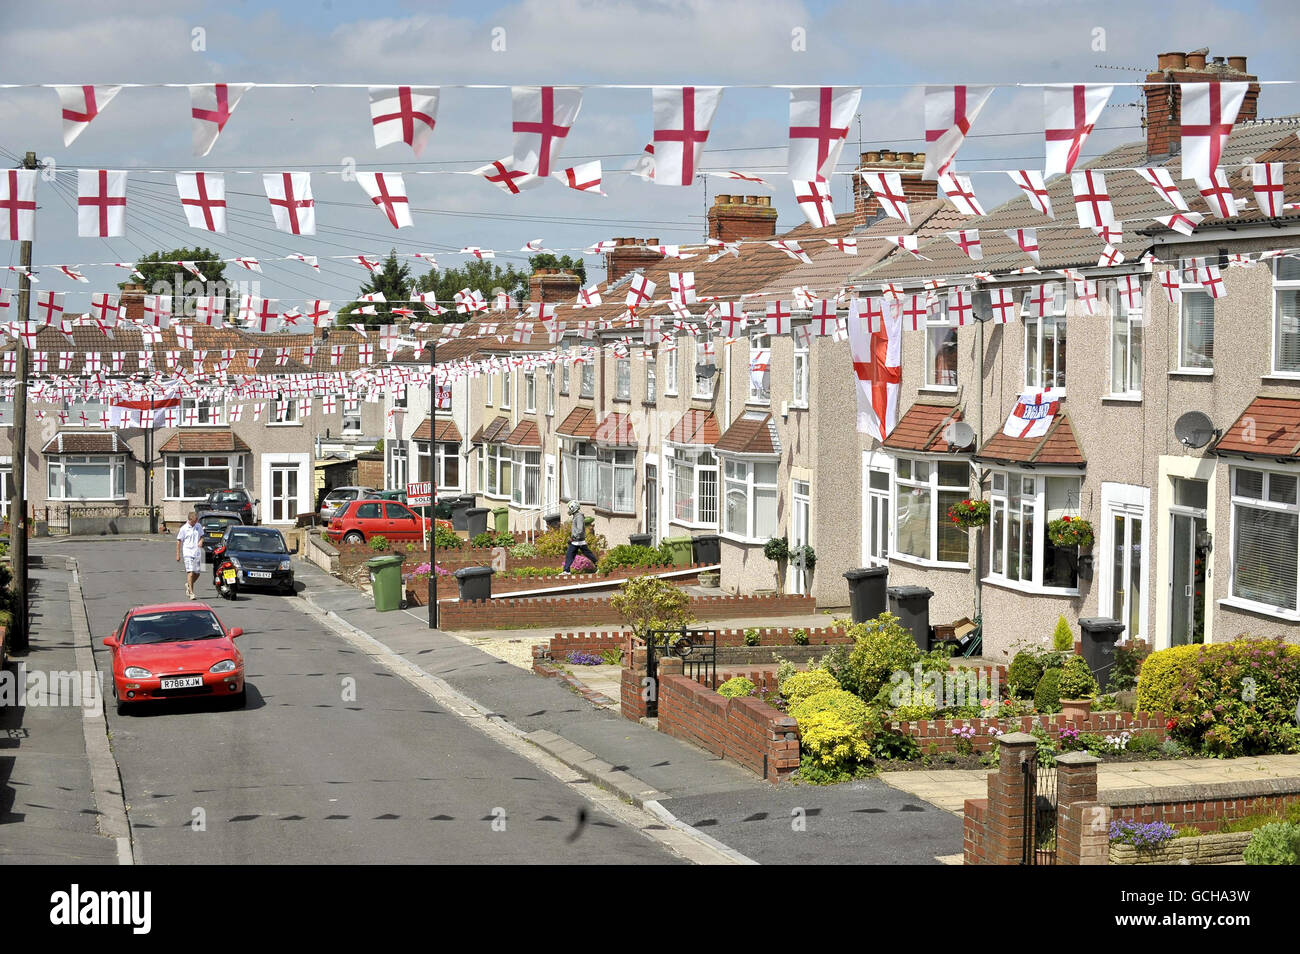 England Fußballfan Jason Millard mit hunderten von Metern Englands Flagge, die er in der Sackgasse, in der er lebt, aufgesetzt hat, Heather Close in Kingswood, Bristol, vor der Weltmeisterschaft in Südafrika, wenn die Straße zusammenkommt und während des Turniers eine Party macht. Stockfoto